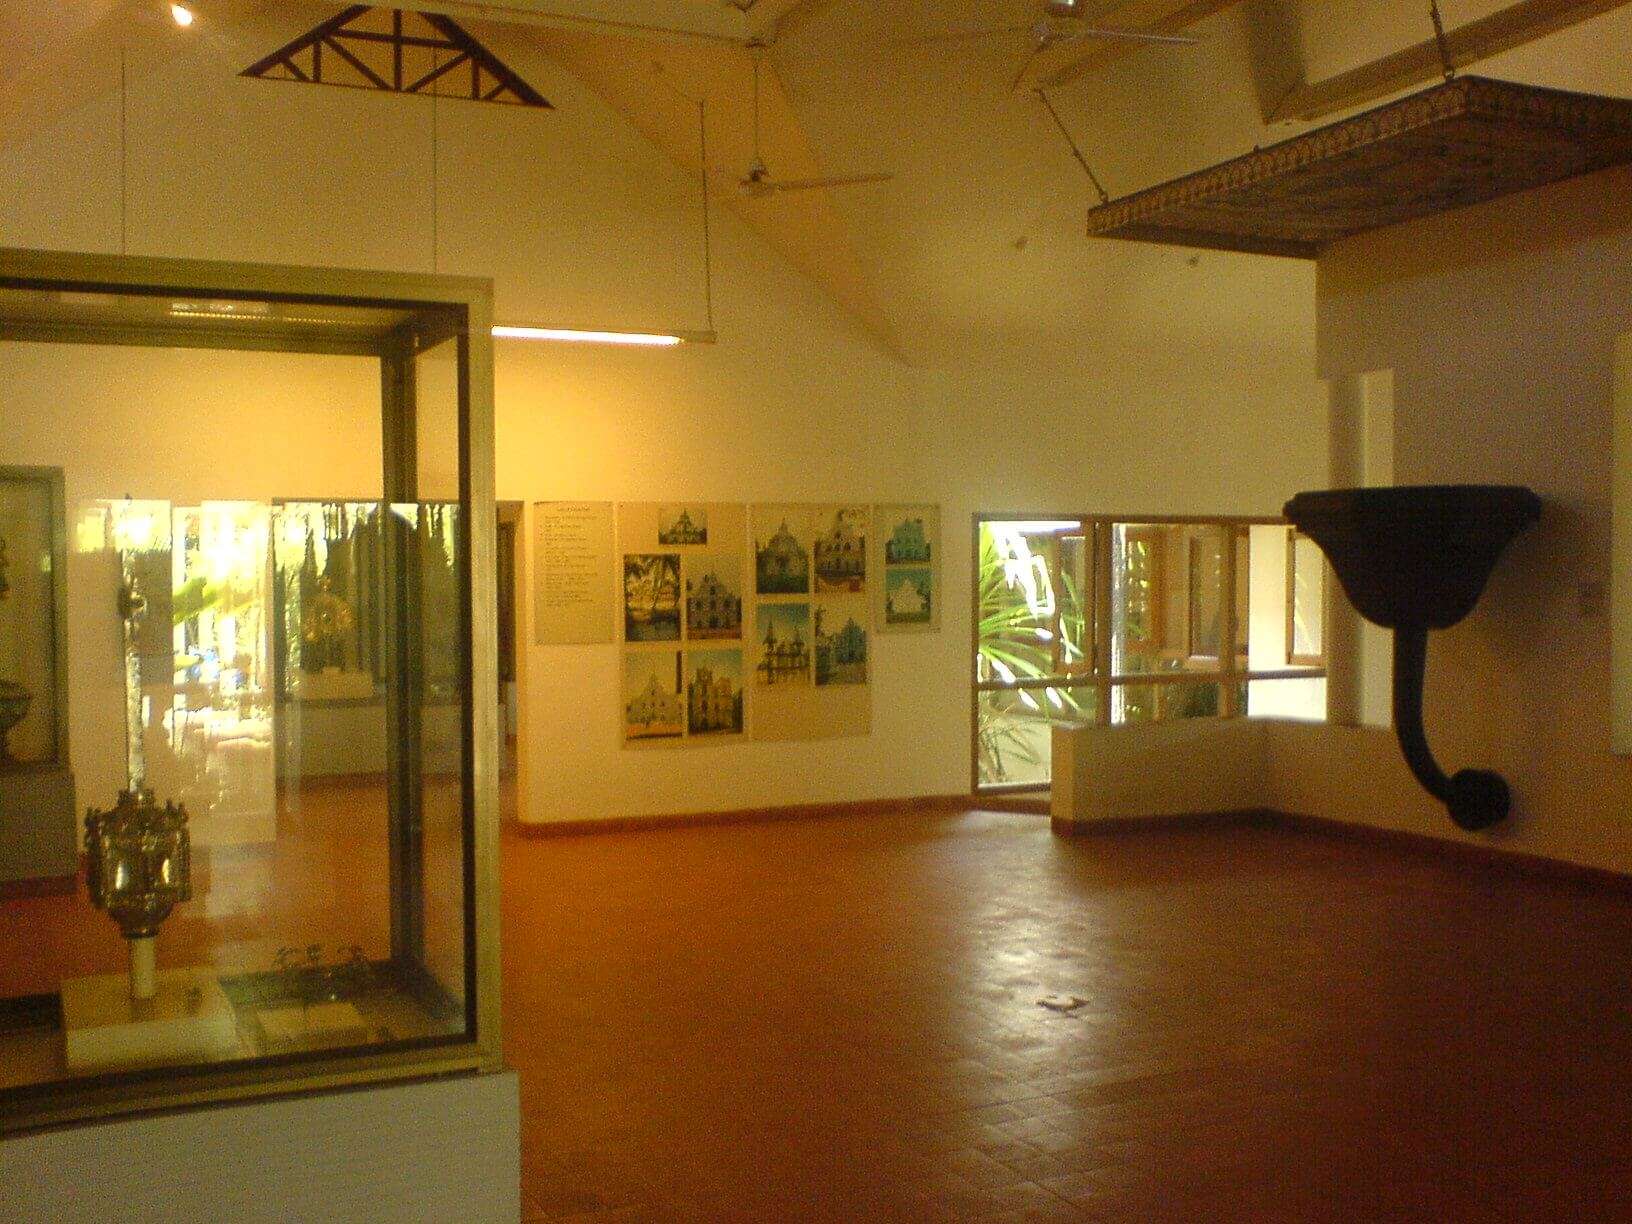 a Portuguese museum in Kochi